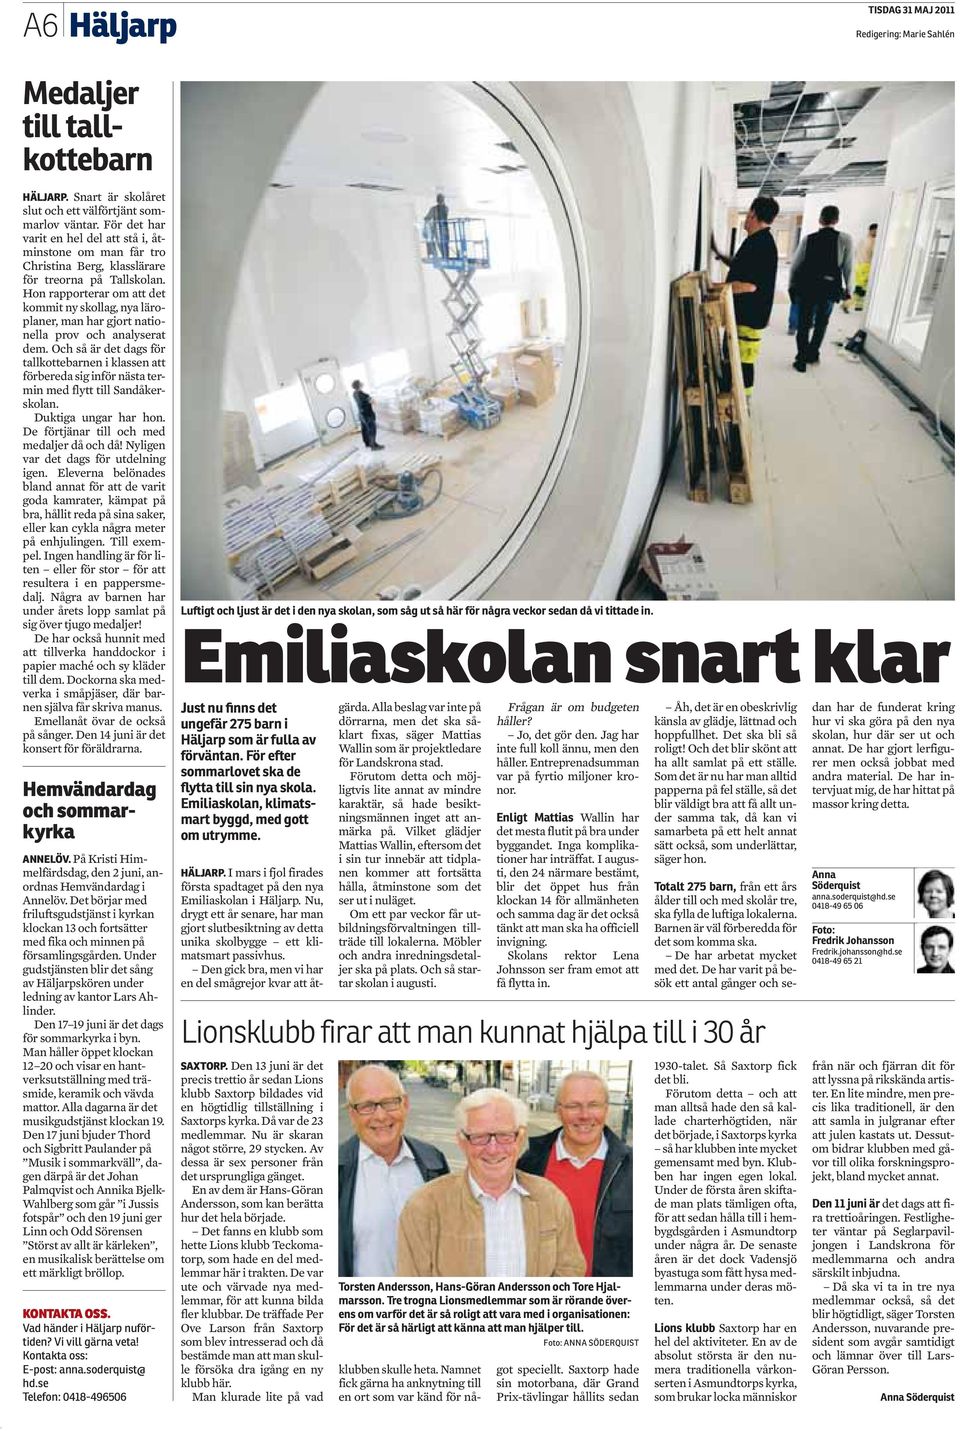 Emiliaskolan snart klar Just nu finns det ungefär 275 barn i Häljarp som är fulla av förväntan. För efter sommarlovet ska de flytta till sin nya skola.